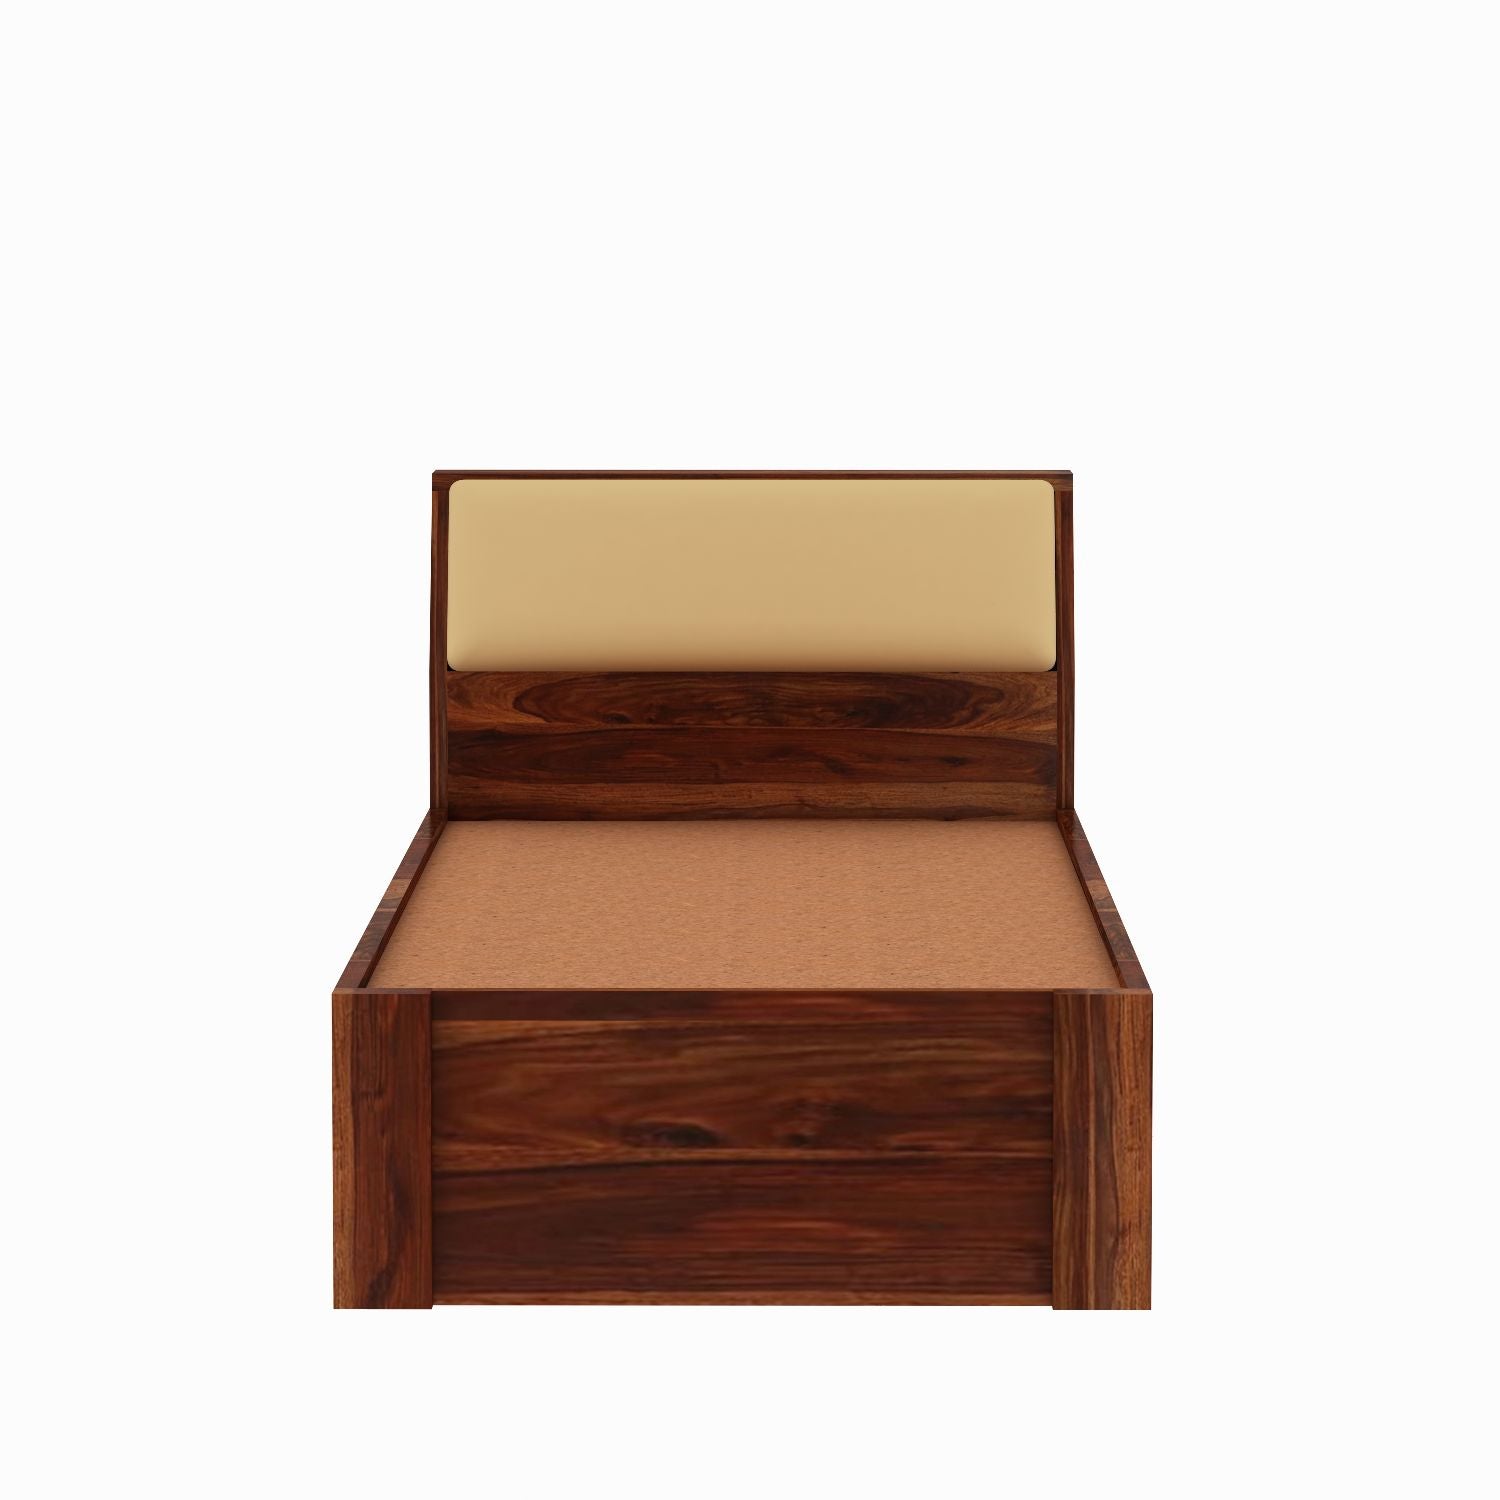 Rubikk Solid Sheesham Wood Single Bed Without Storage (Natural Finish)